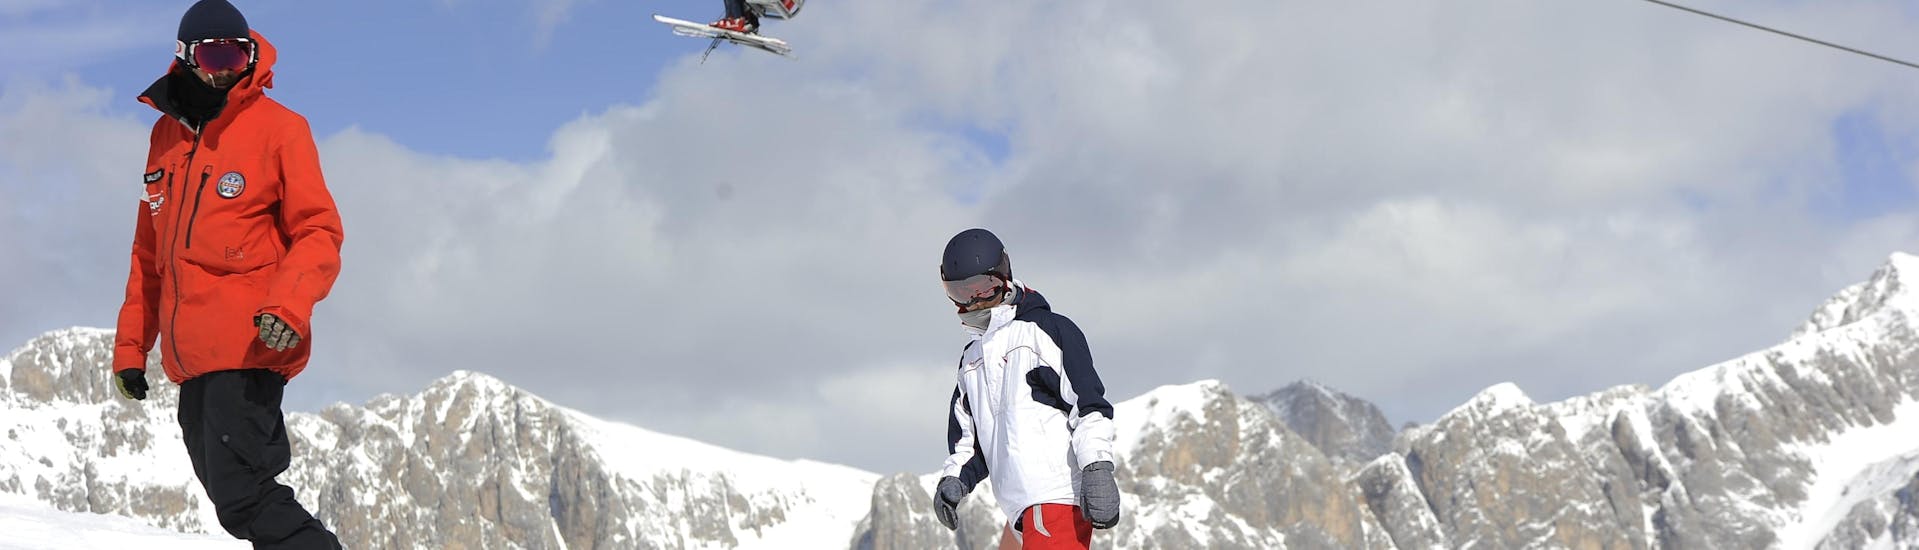 Snowboarder sulle piste di Falcade durante una delle lezioni private di snowboard per bambini e adulti di tutti i livelli.